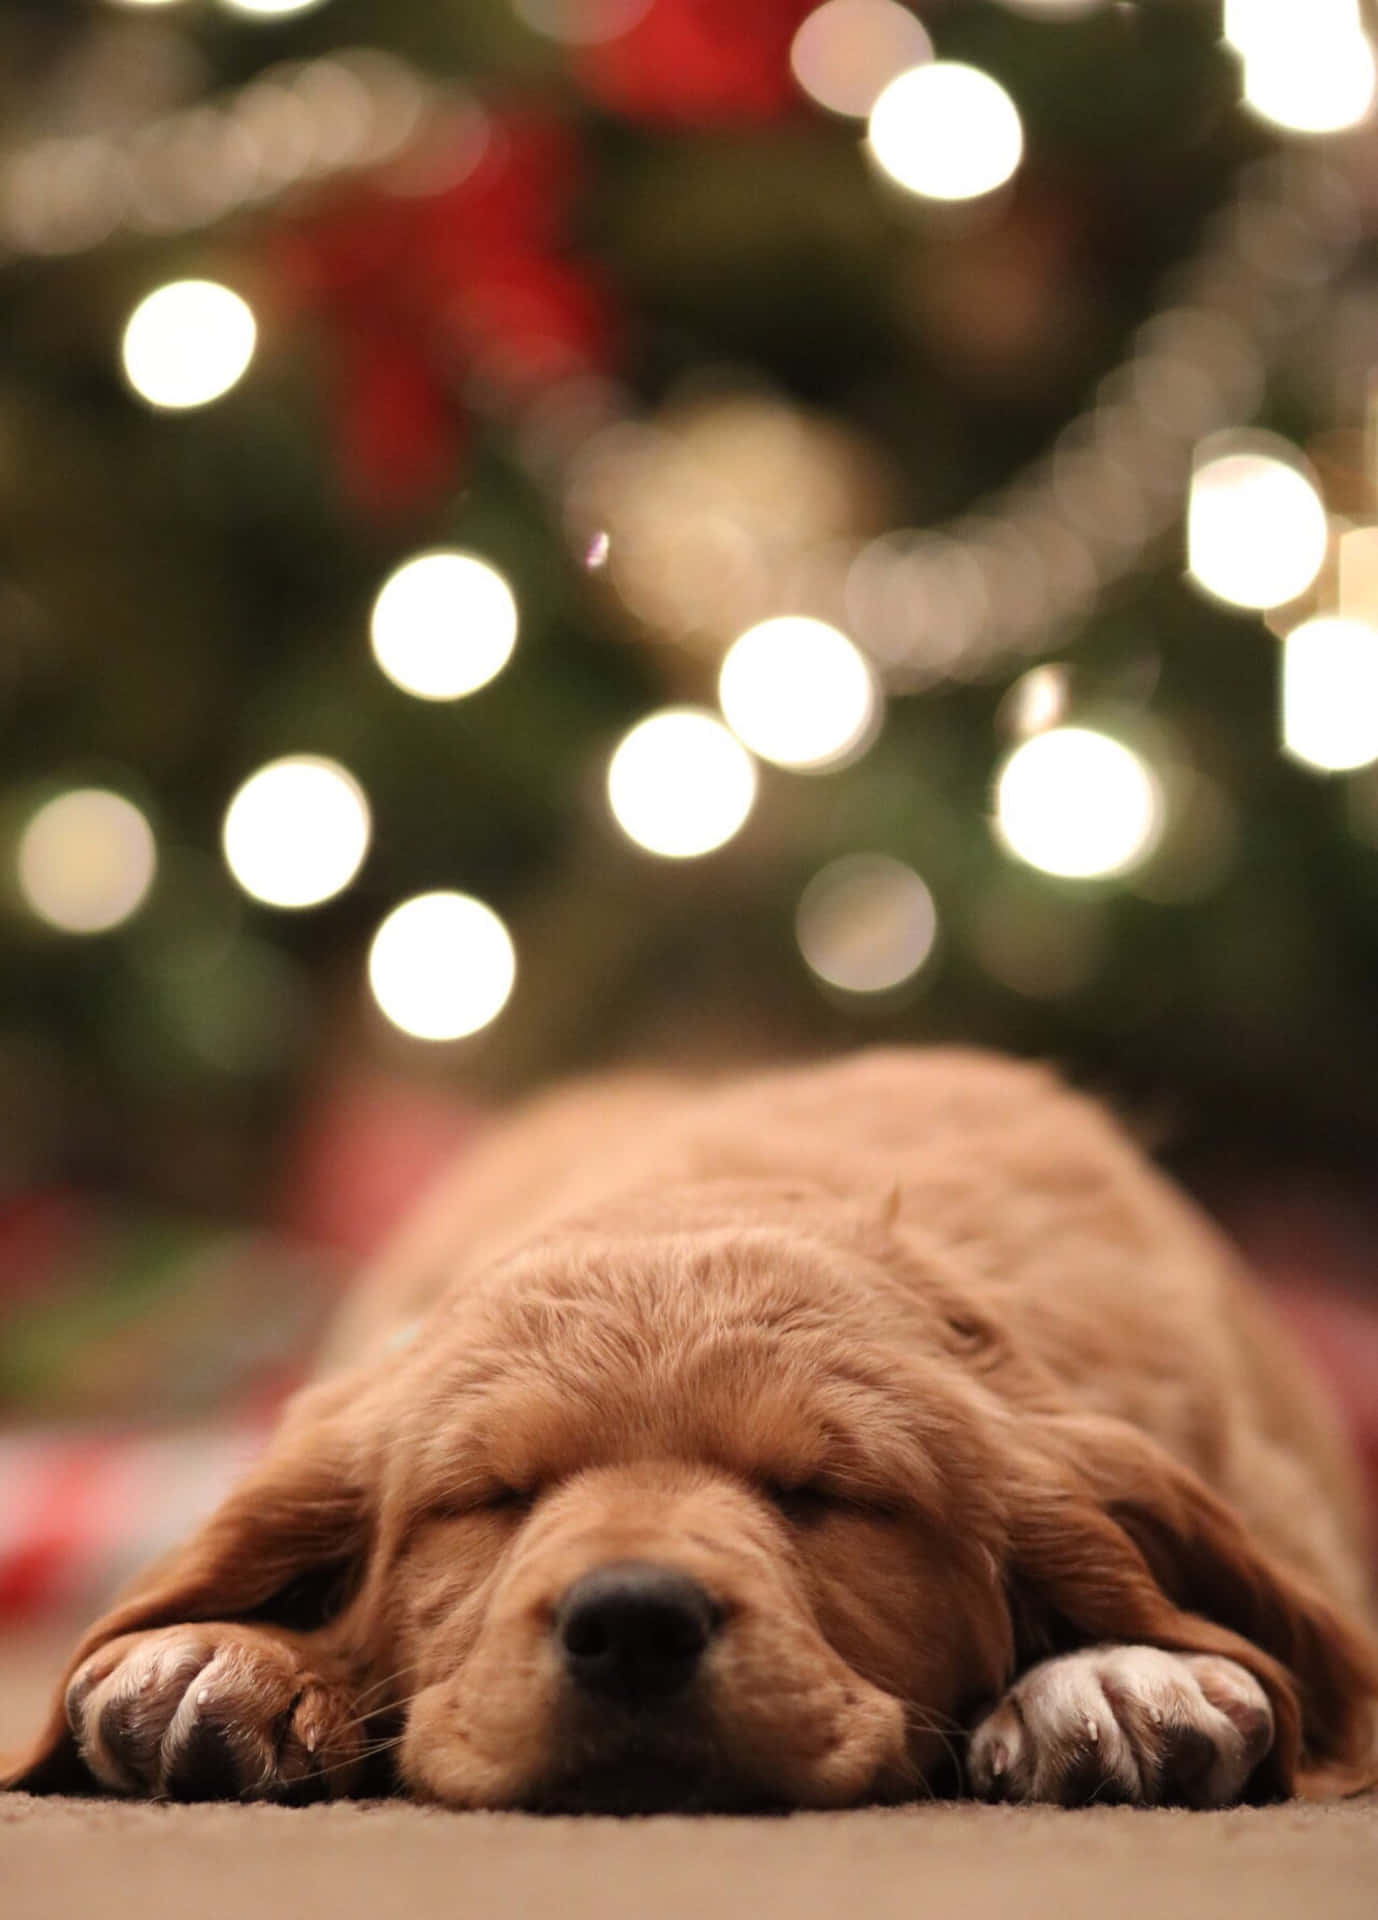 Sleeping Christmas Dog Background